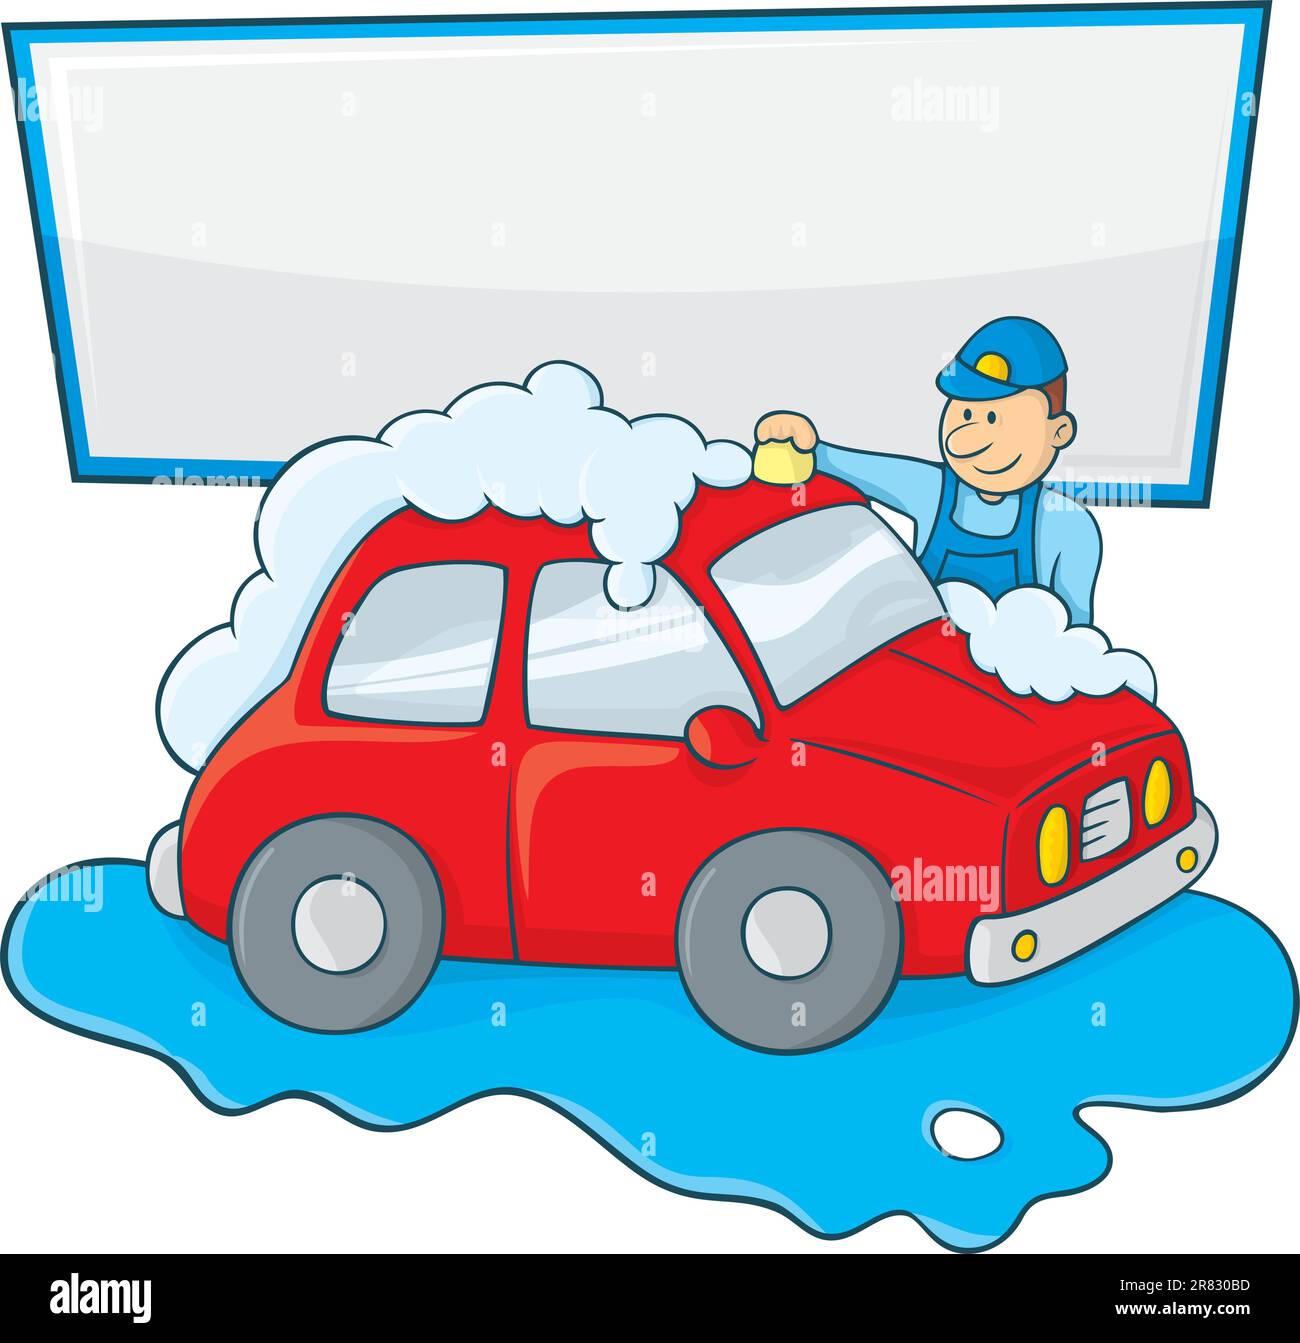 Dessin animé d'un homme de forme bleue laver à la main une voiture rouge avec un espace de copie pour votre message. Illustration de Vecteur